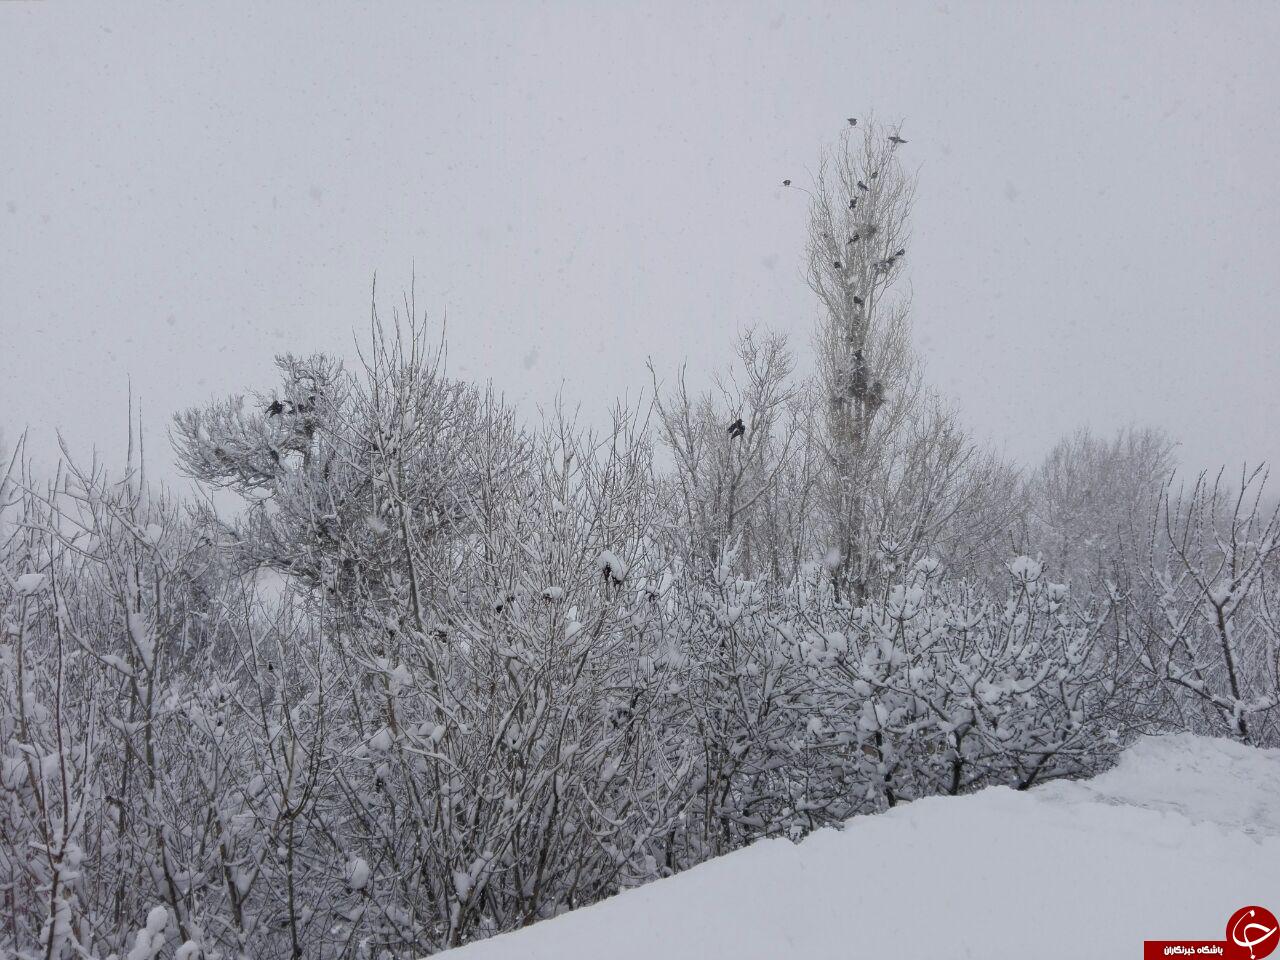 نمای برفی زیبا در فریدون + تصاویر